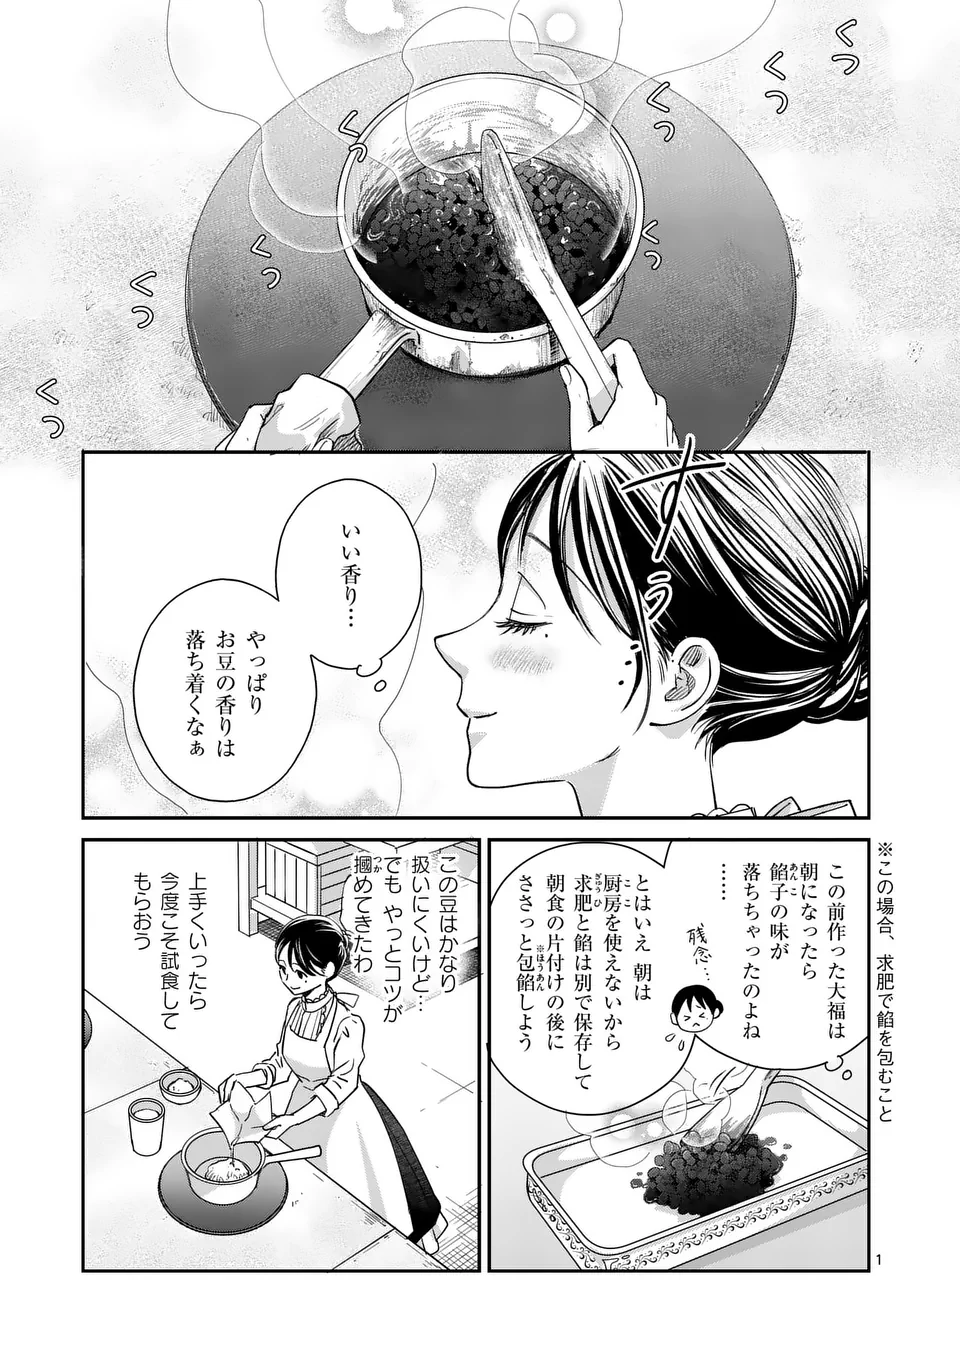 Makizoe de Isekai ni Yobidasareta no de, Sekai Kanmushi shite Wagashi Tsukurimasu - Chapter 4 - Page 1